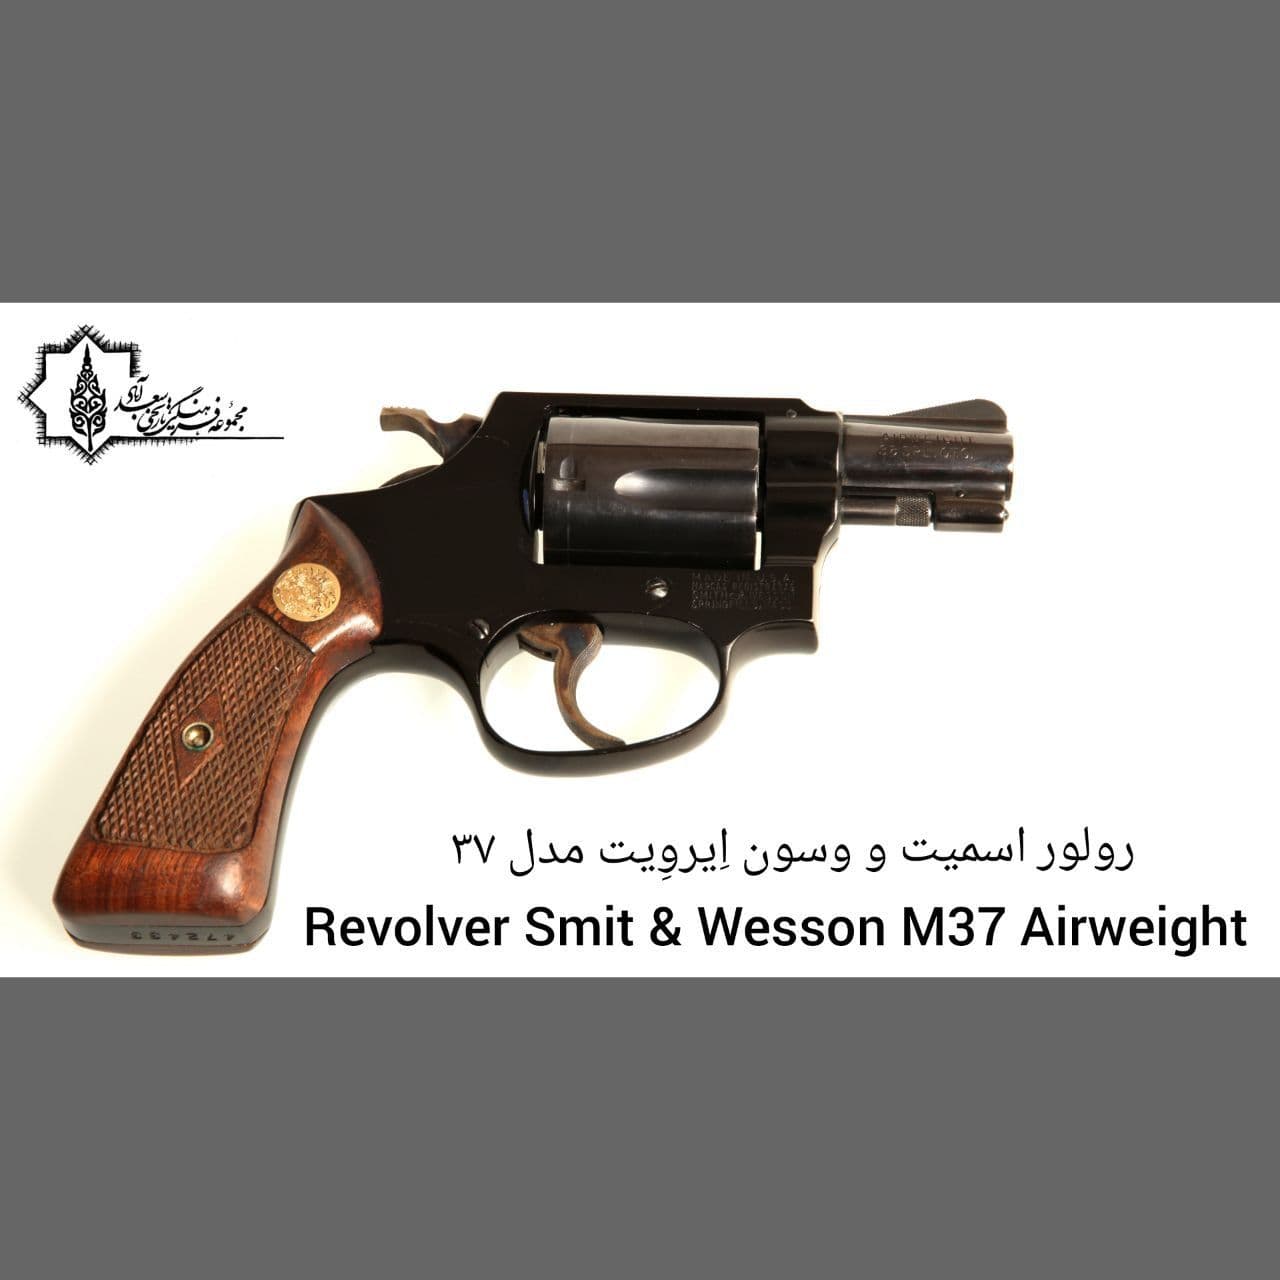 رولور اسمیت و وسو ن اِیروِیت مدل 37 Revolver Smith & Wesson M37 Airweigh t/موزه سلاح های دربار